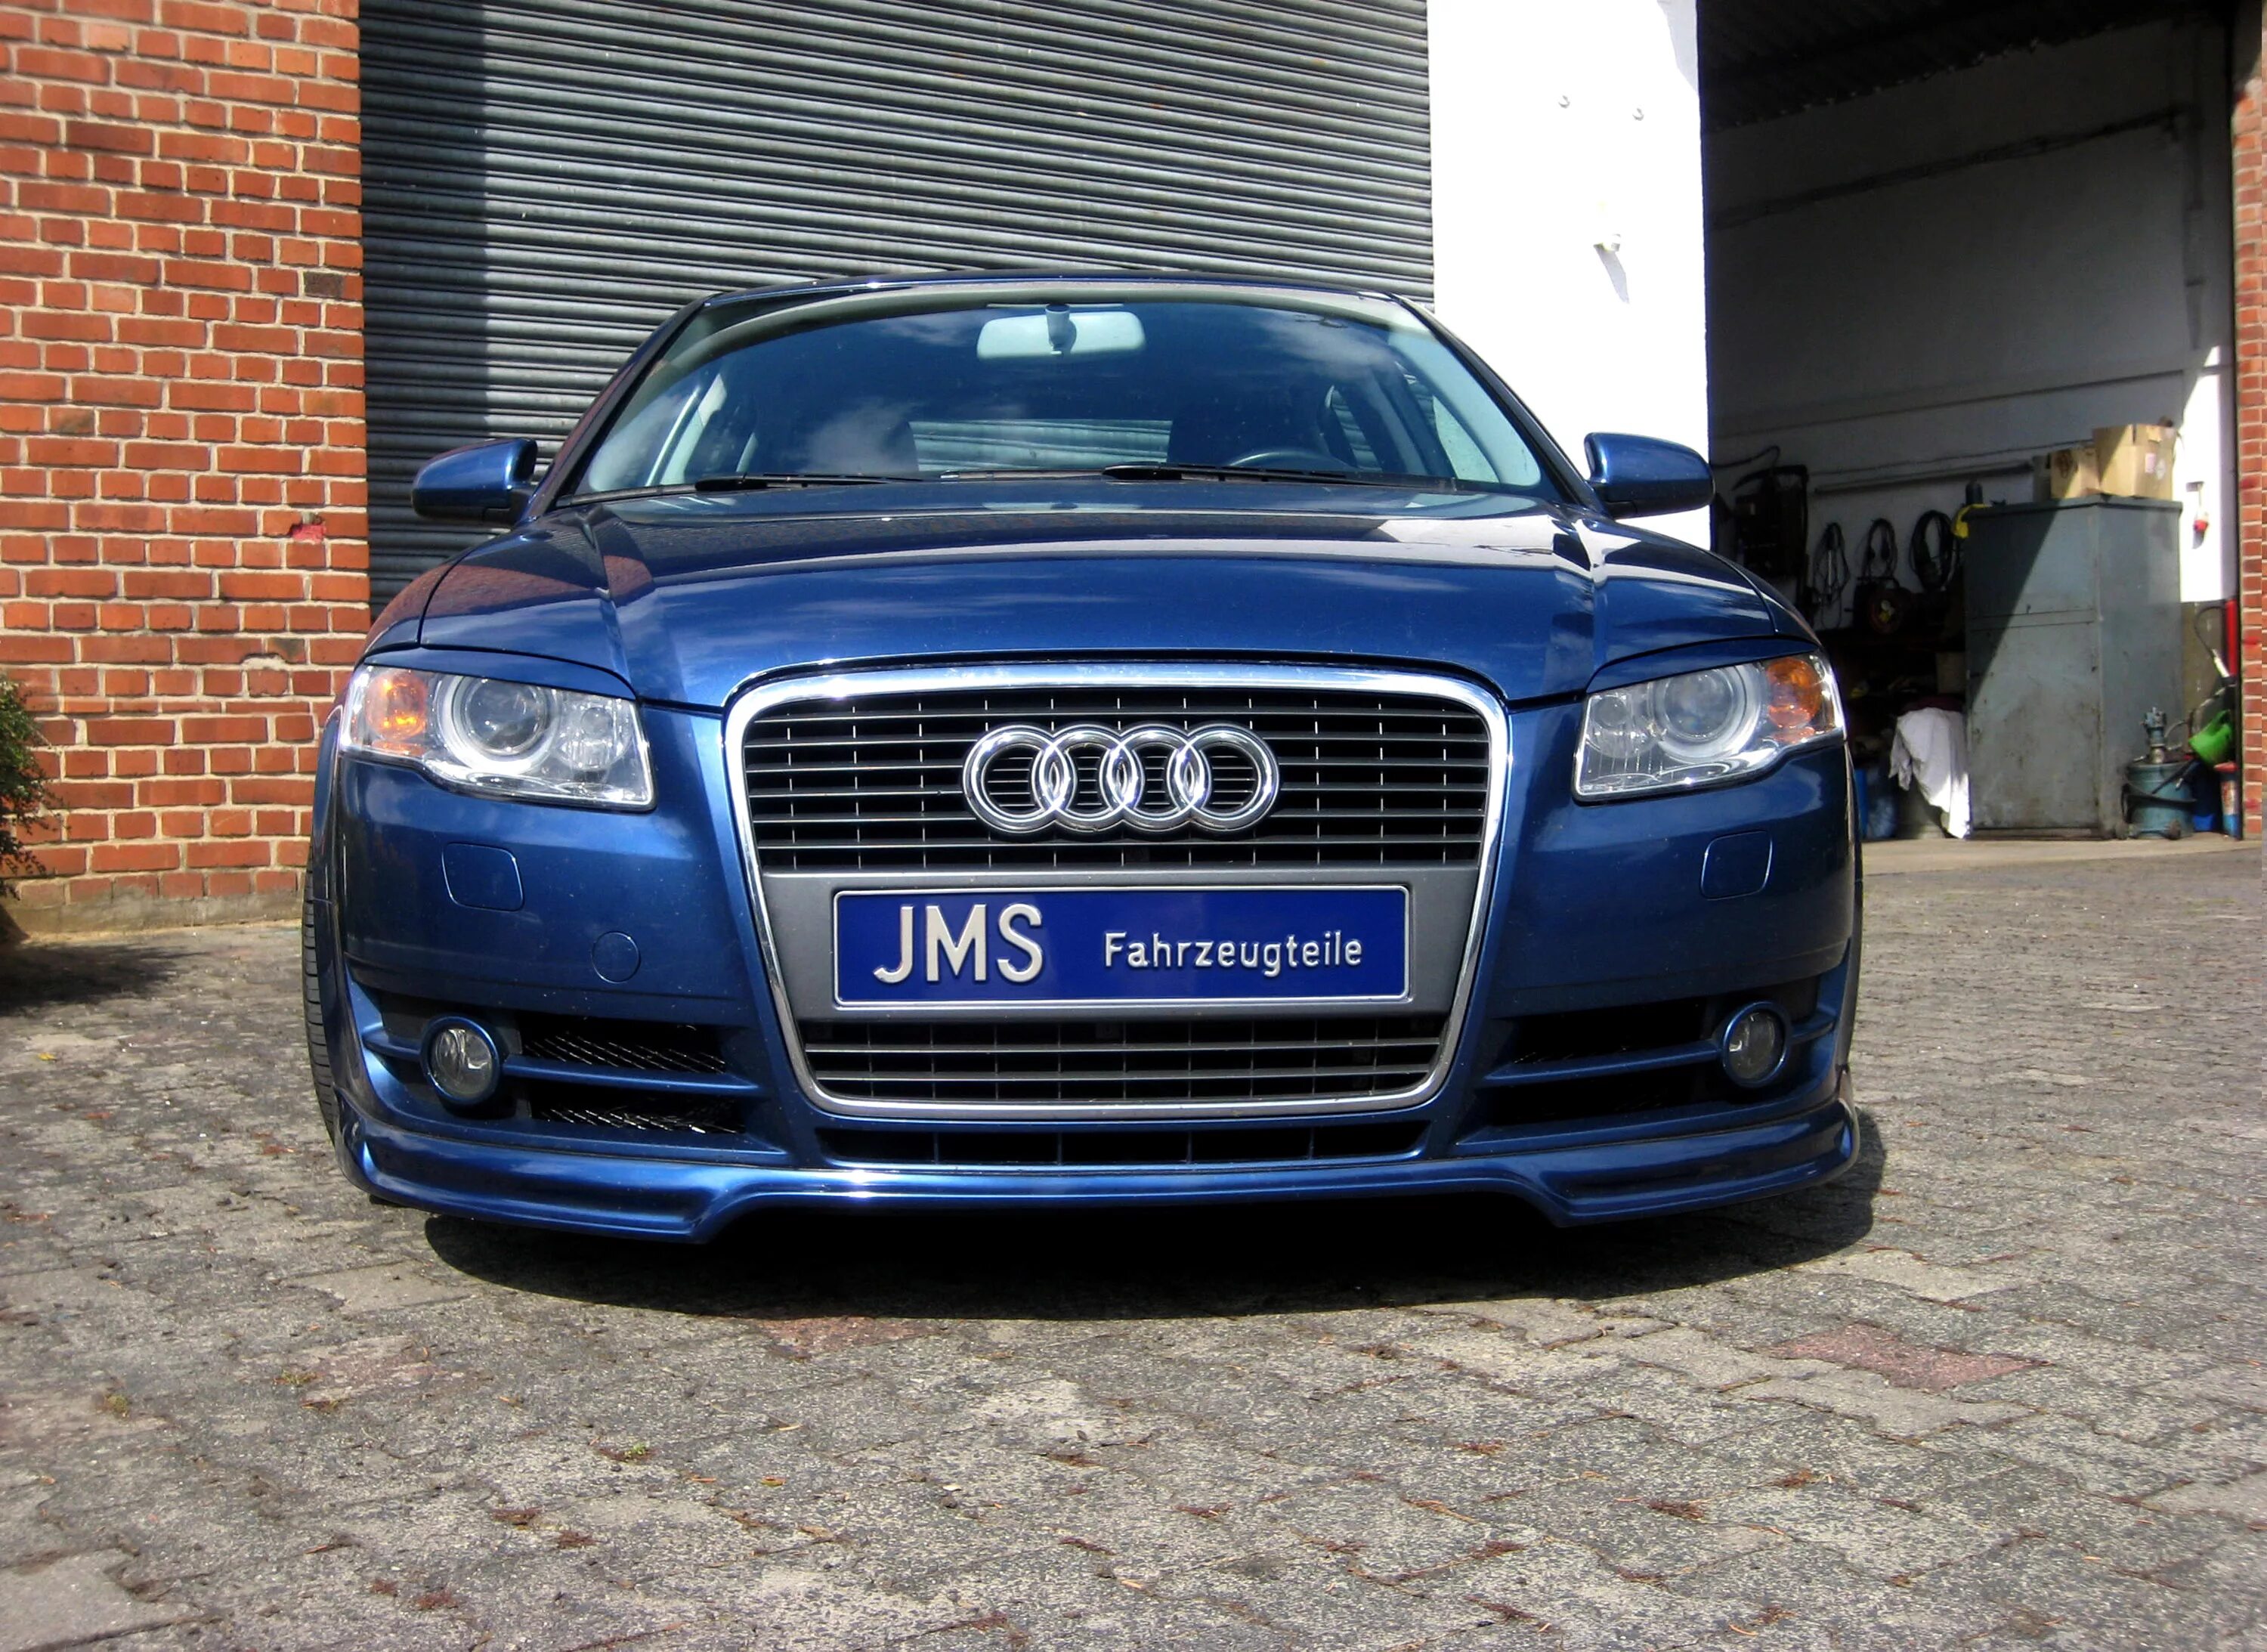 B 4 b 7. Audi a4 b7 2005. Audi a4 b7 Front. Audi a4 b7 2008. Ауди а4 б7 2008.